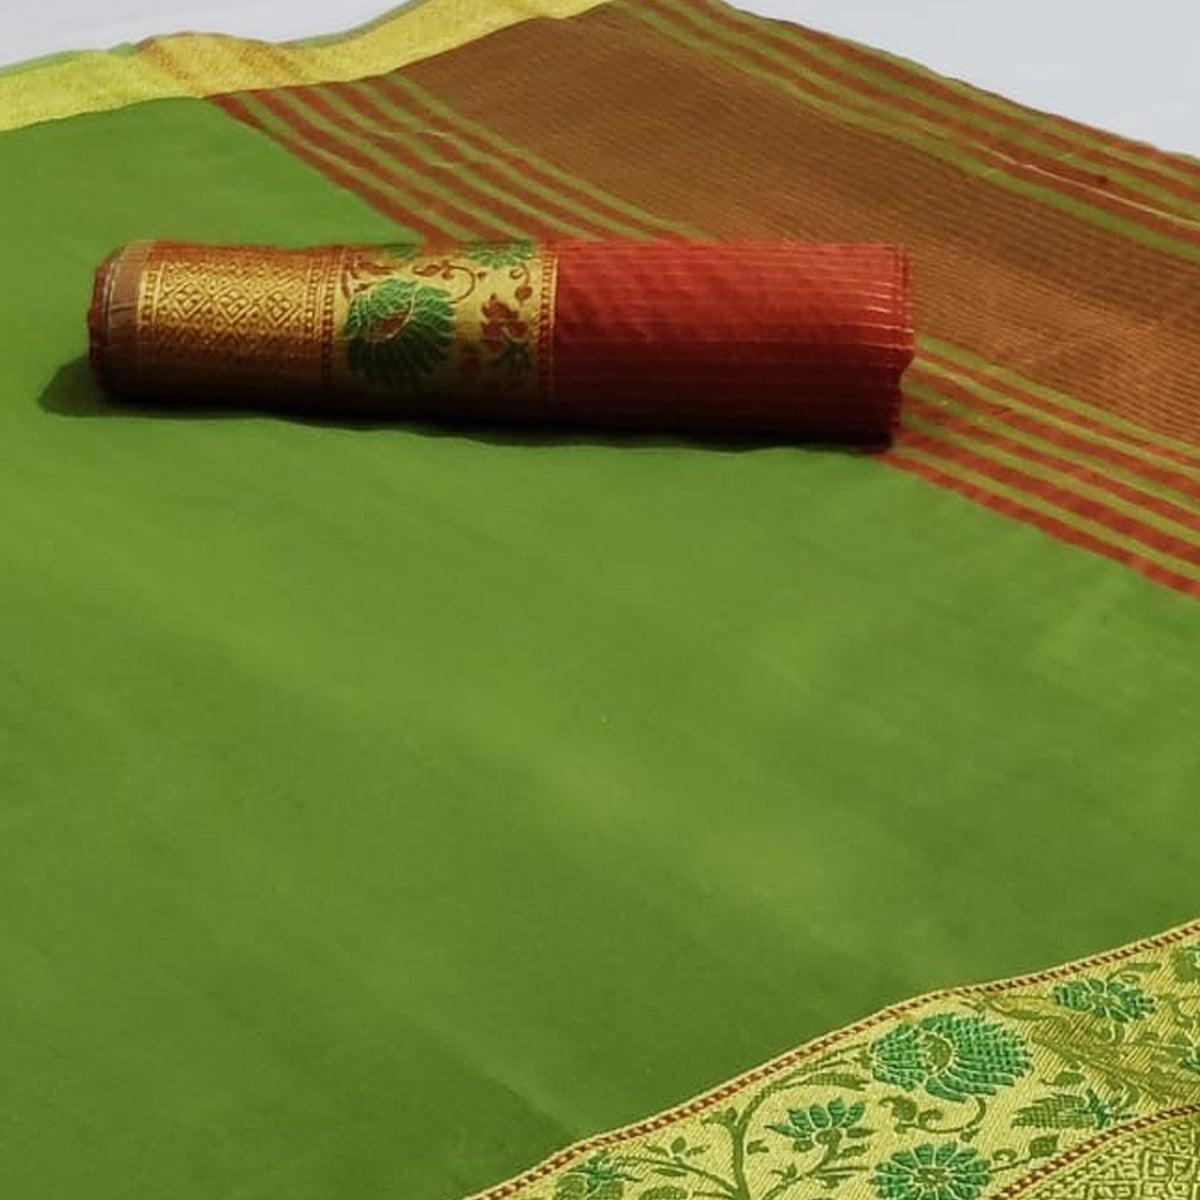 Unique Green Colored Festive Wear Woven Cotton Saree - Peachmode